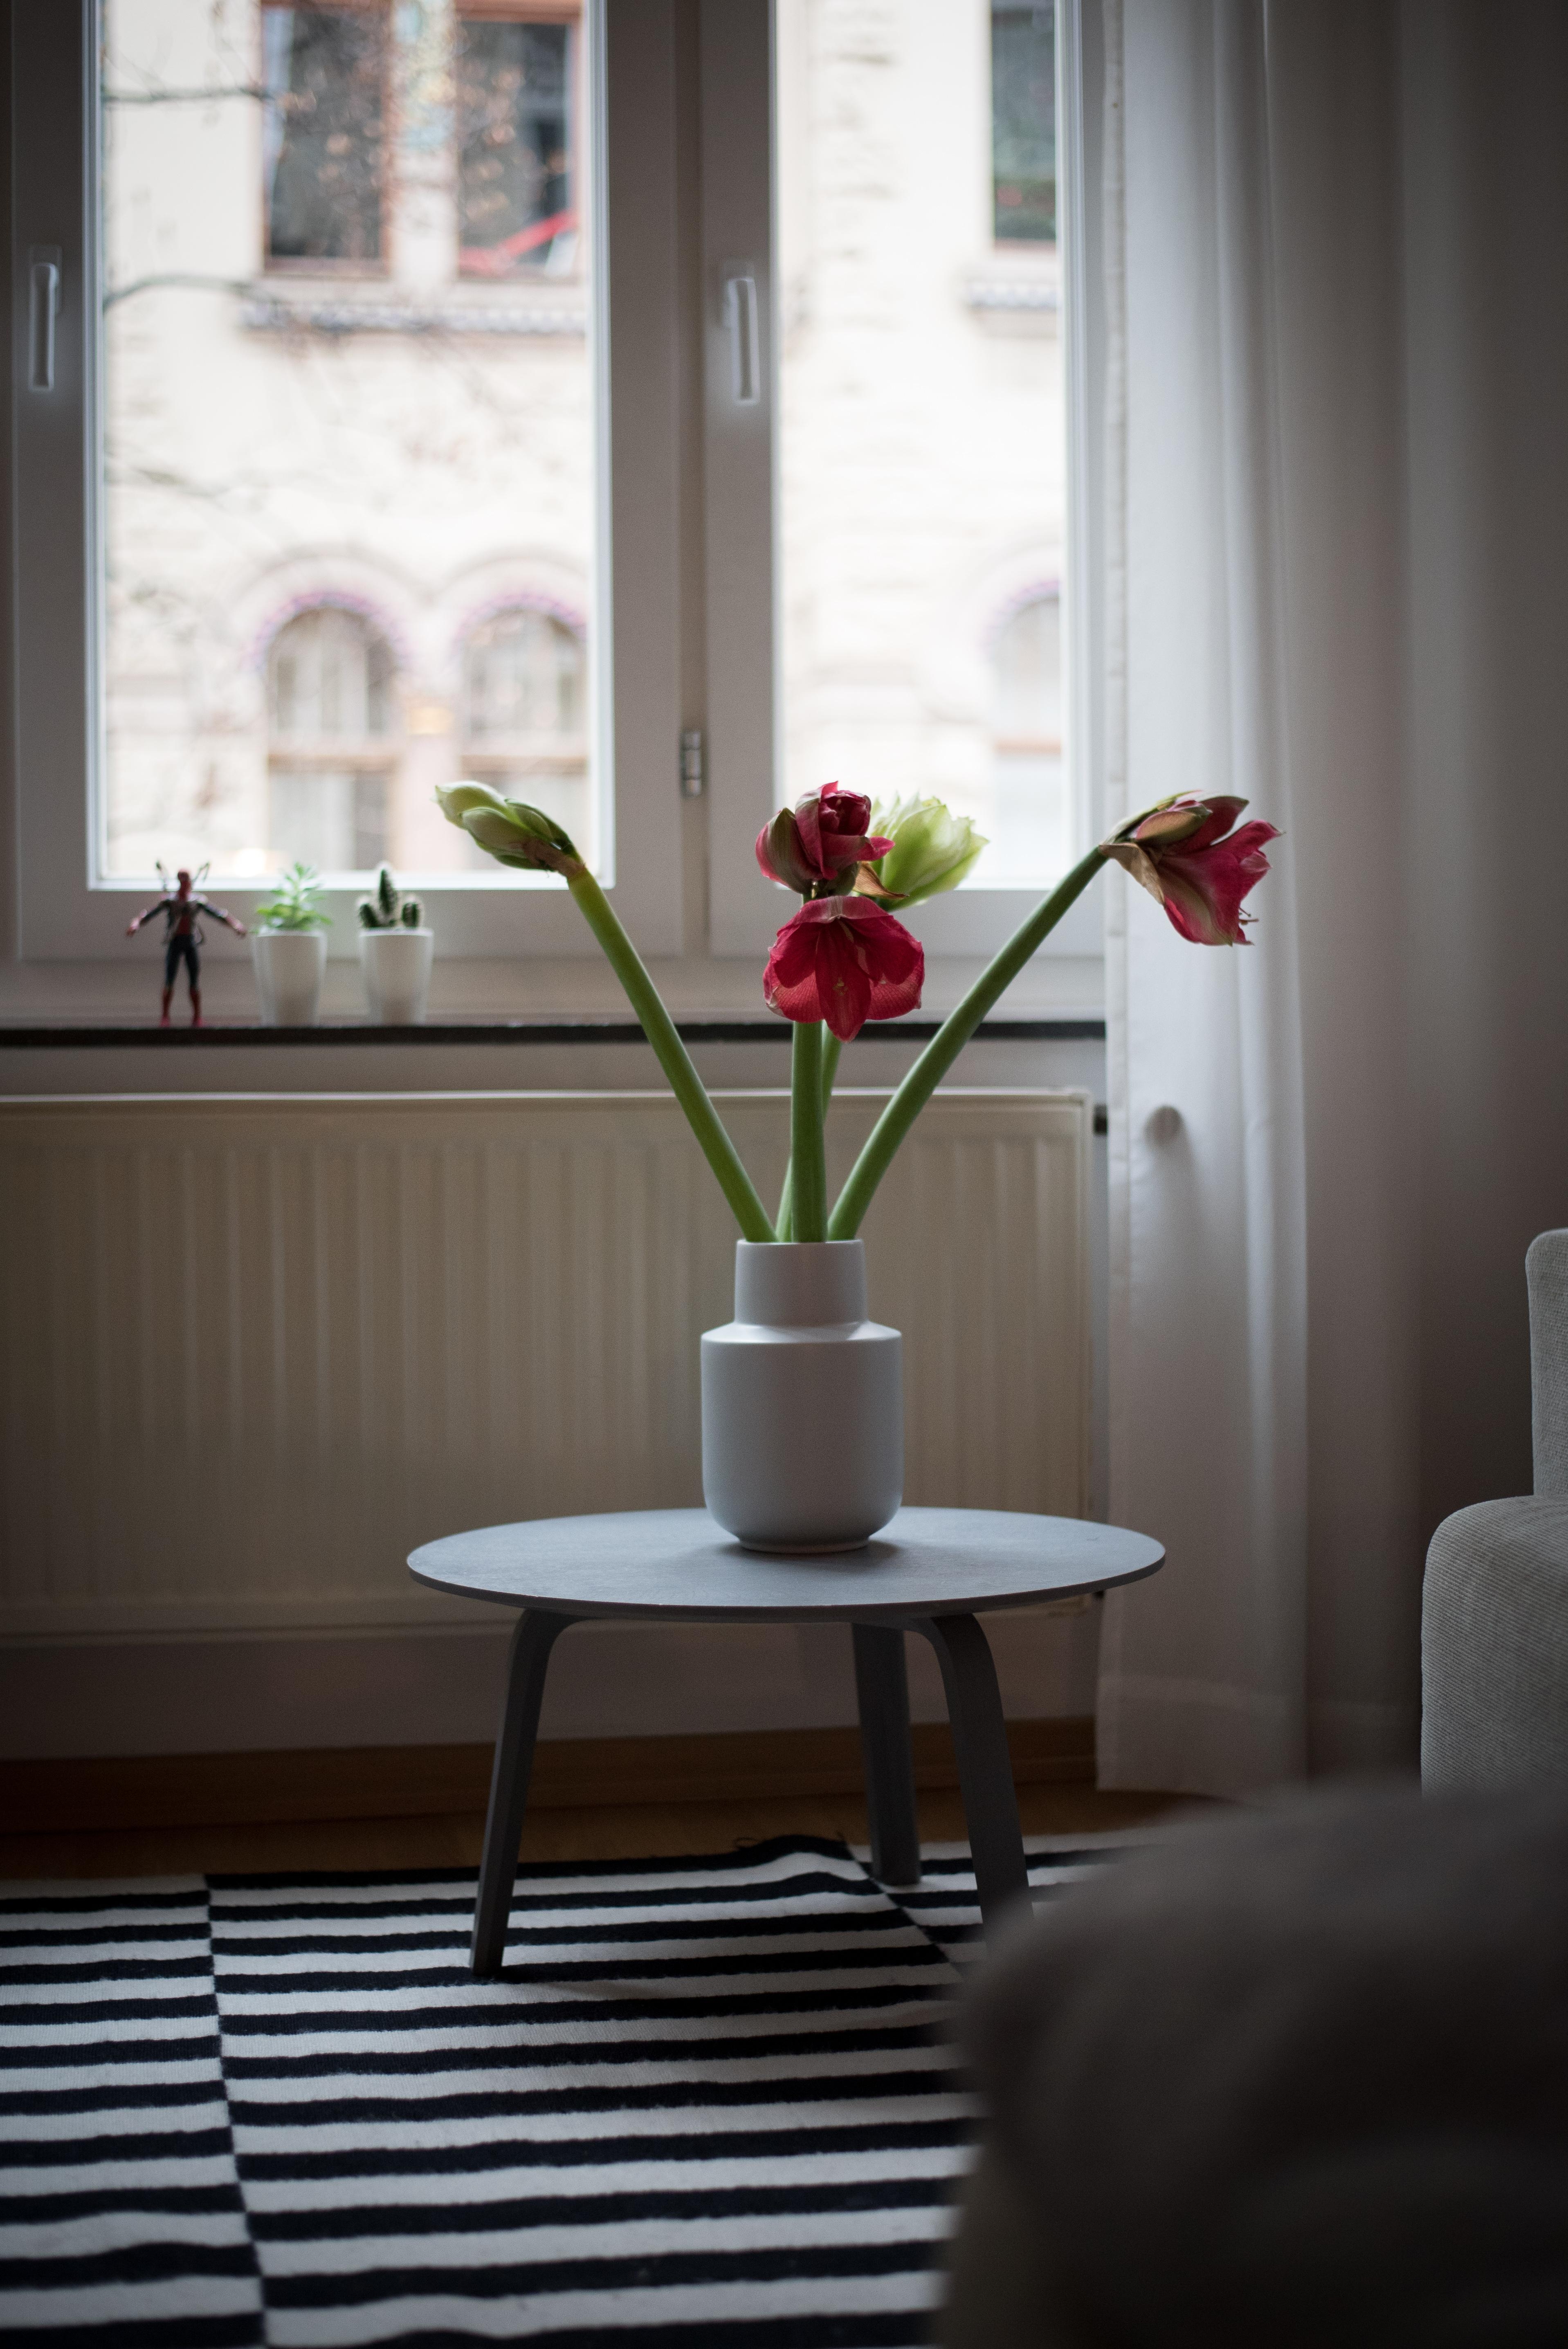 Amaryllis-Liebe! #livingroom #wintermood #interiorinspo